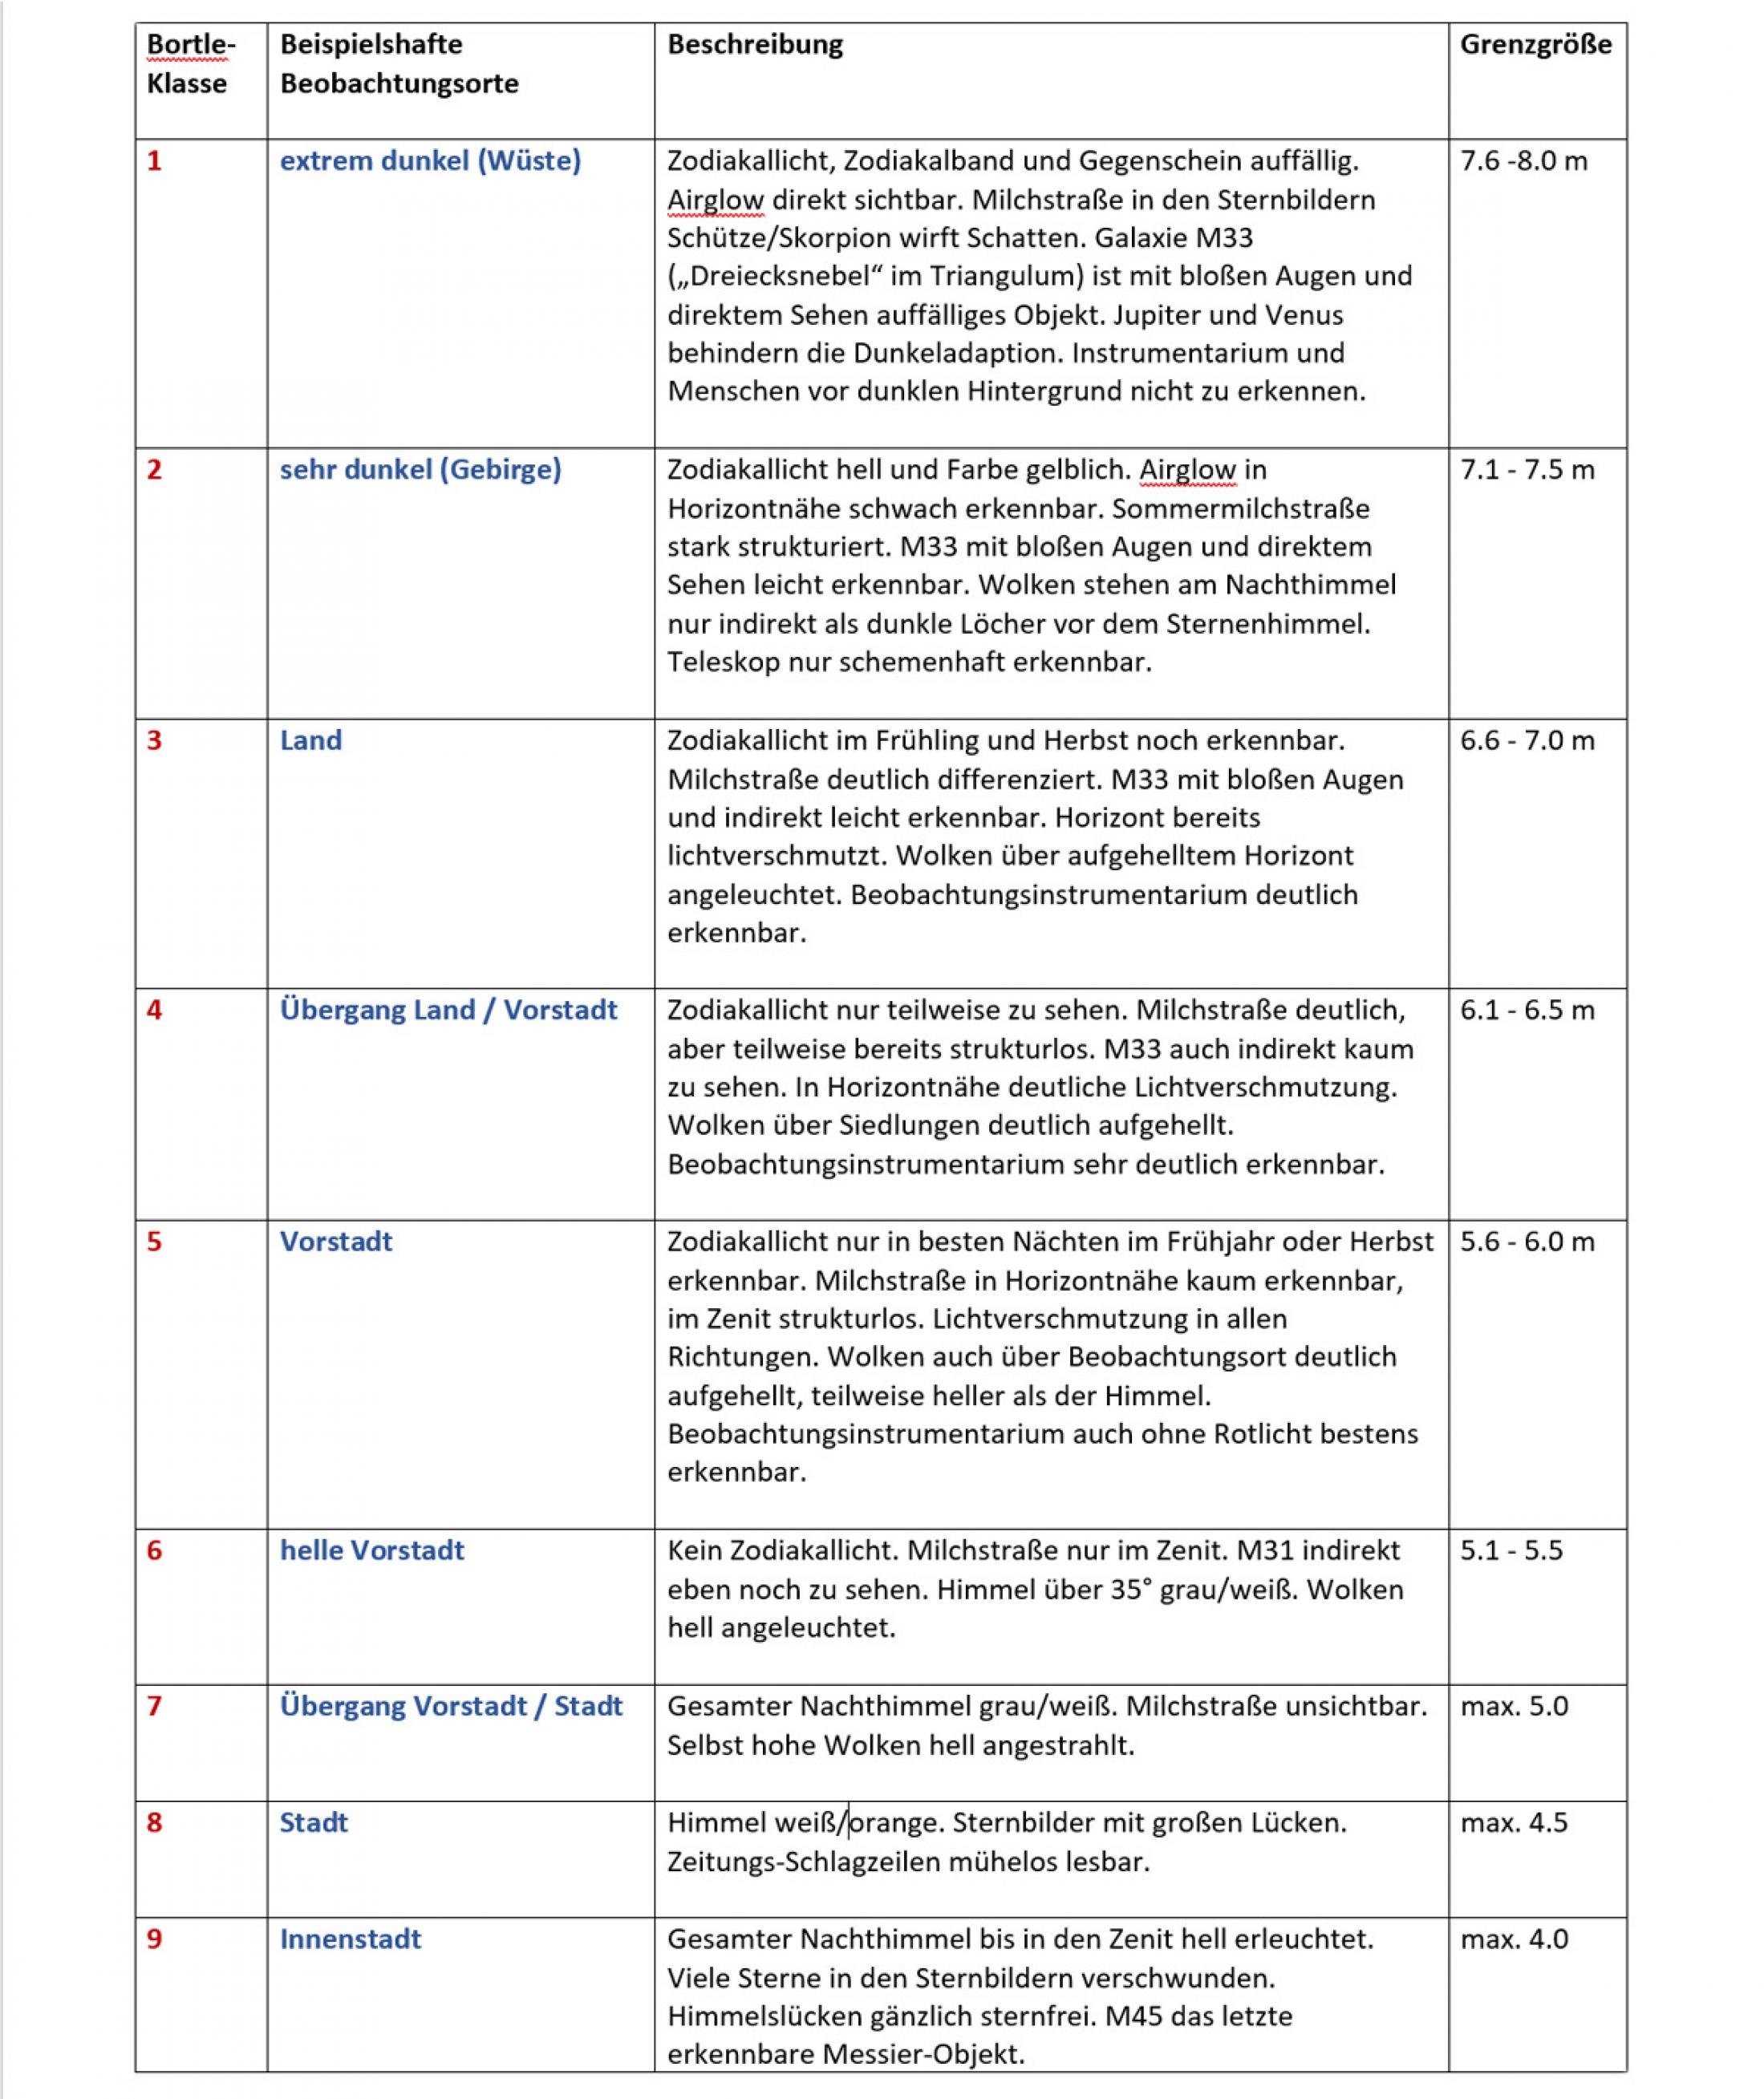 Die Tabelle zeigt die Bortle-Bewertung der Lichtverschmutzung. Die Klassen 1 und 2 sucht man in Mitteleuropa heute leider vergeblich